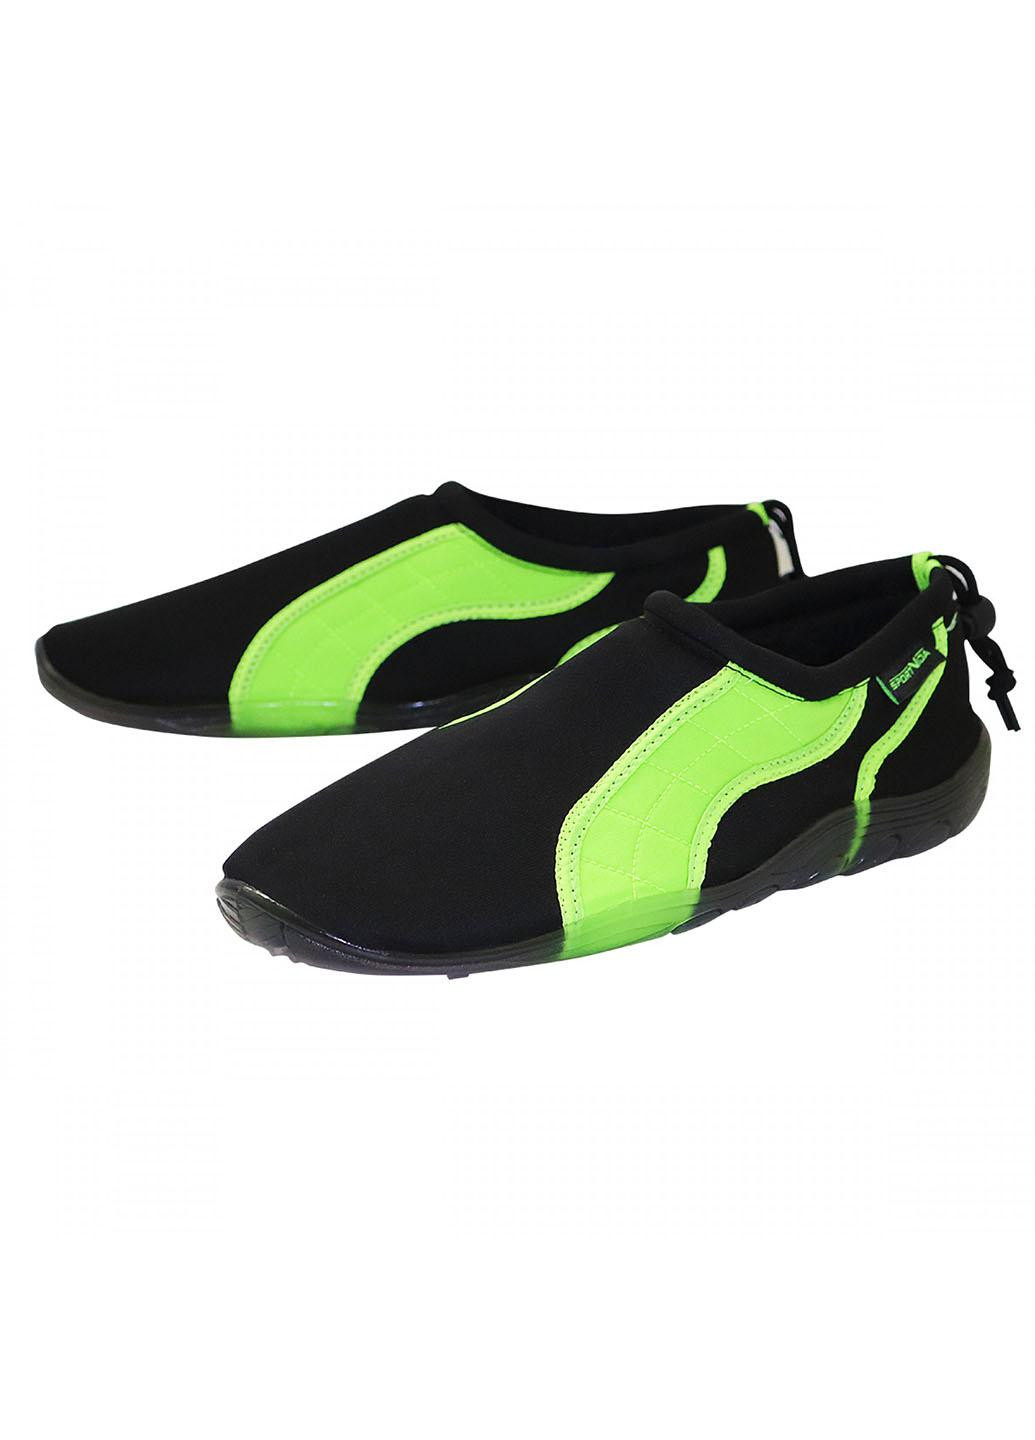 Взуття для пляжу і коралів (аквашузи) SV-GY0004-R43 Size 43 Black/Green SportVida (258486771)